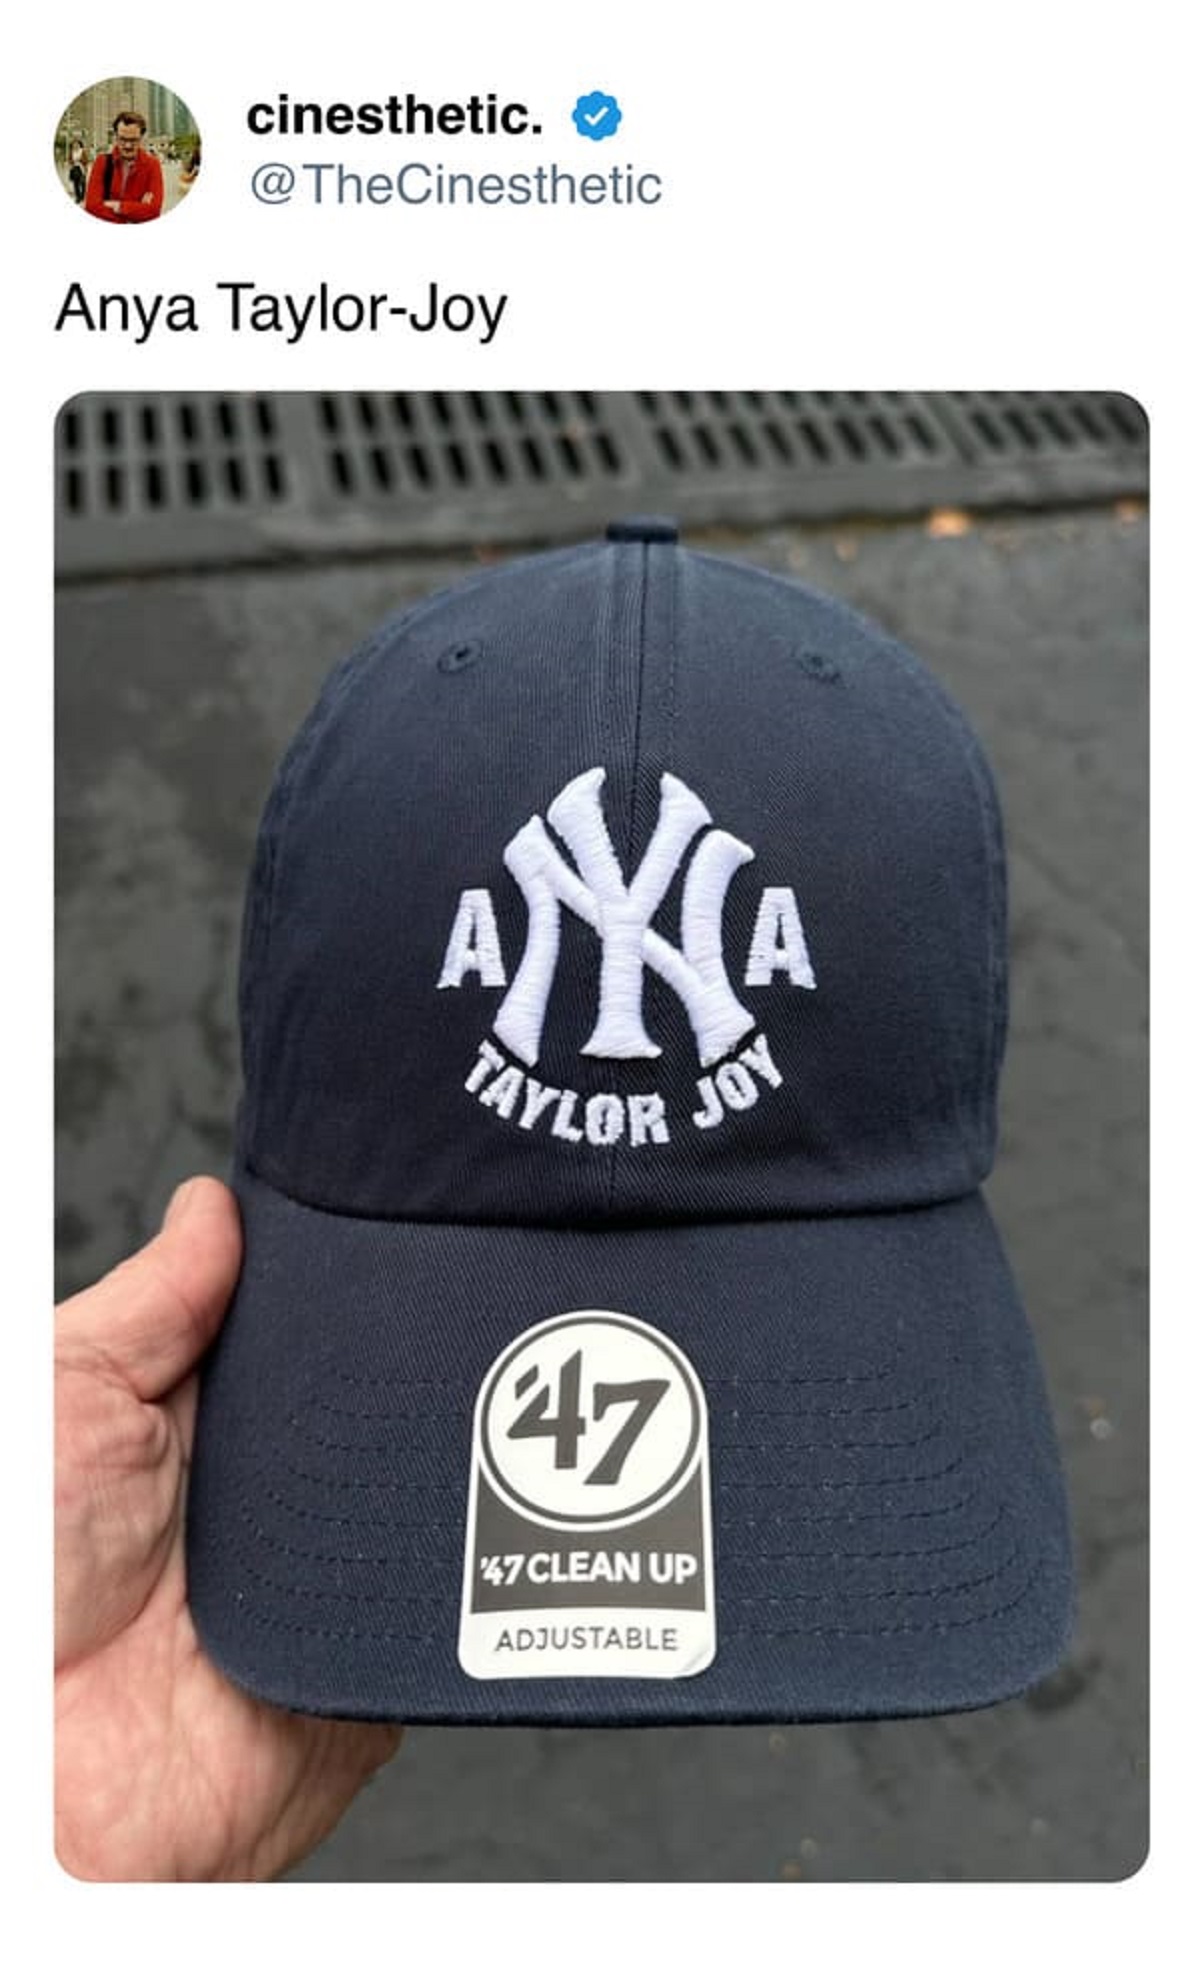 baseball cap - cinesthetic. Anya TaylorJoy A Taylor 47 47 Clean Up Adjustable Joy